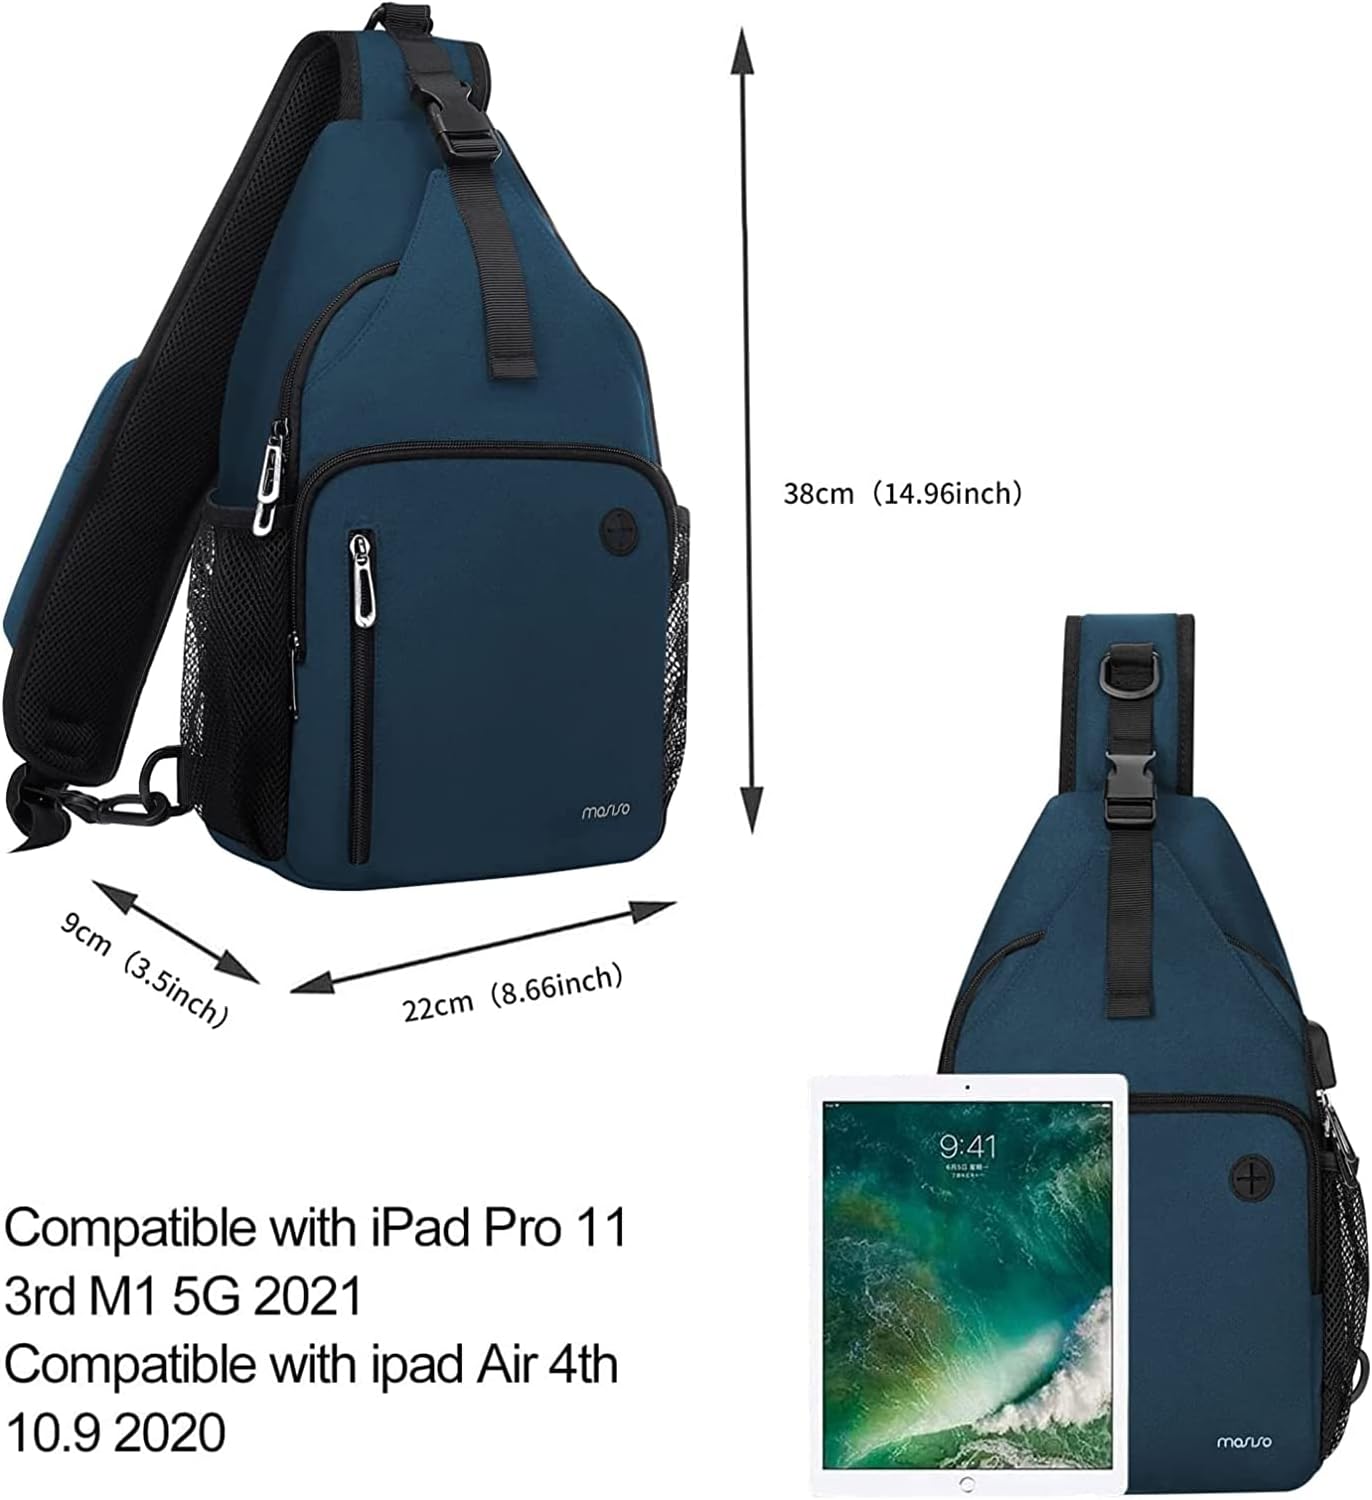 MOSISO Sling Backpack Bag, Crossbody Shoulder Bag Travel Hiking